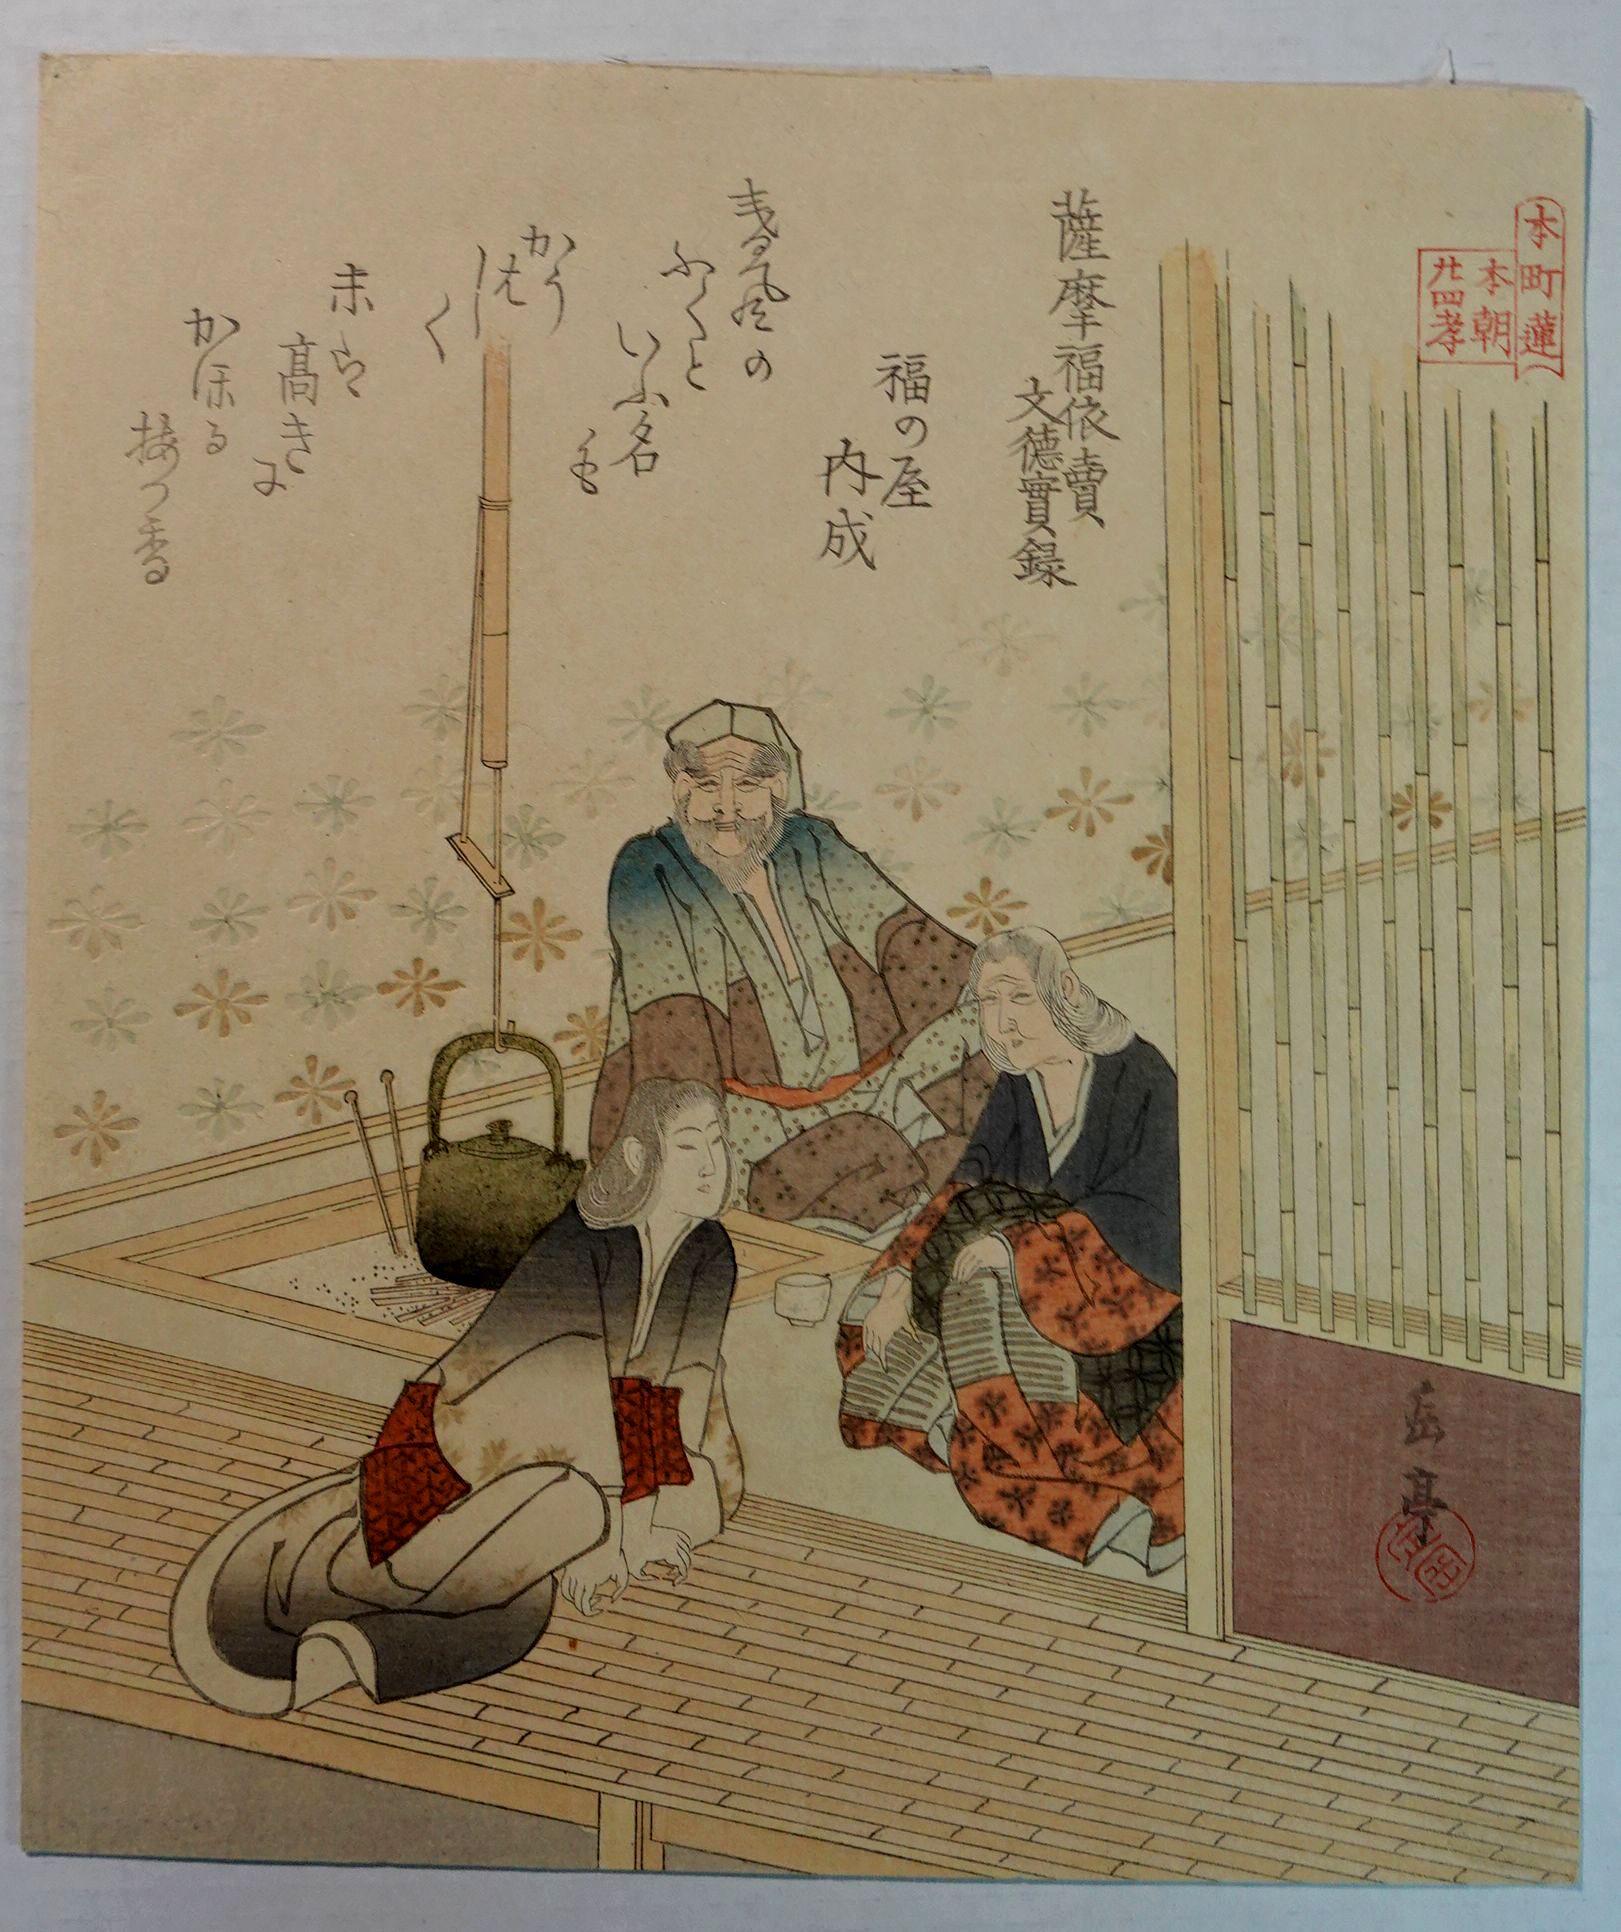 Japanischer Farbholzschnitt Gakutei (1786-1868) von Harunobu Sugawara, original und ungerahmt.

ÜBER DEN KÜNSTLER

Gakutei Yashima wurde als Harunobu Sugawara in Edo geboren und studierte Druckgrafik bei Shuei und Hokkei. In den 1830er Jahren zog er